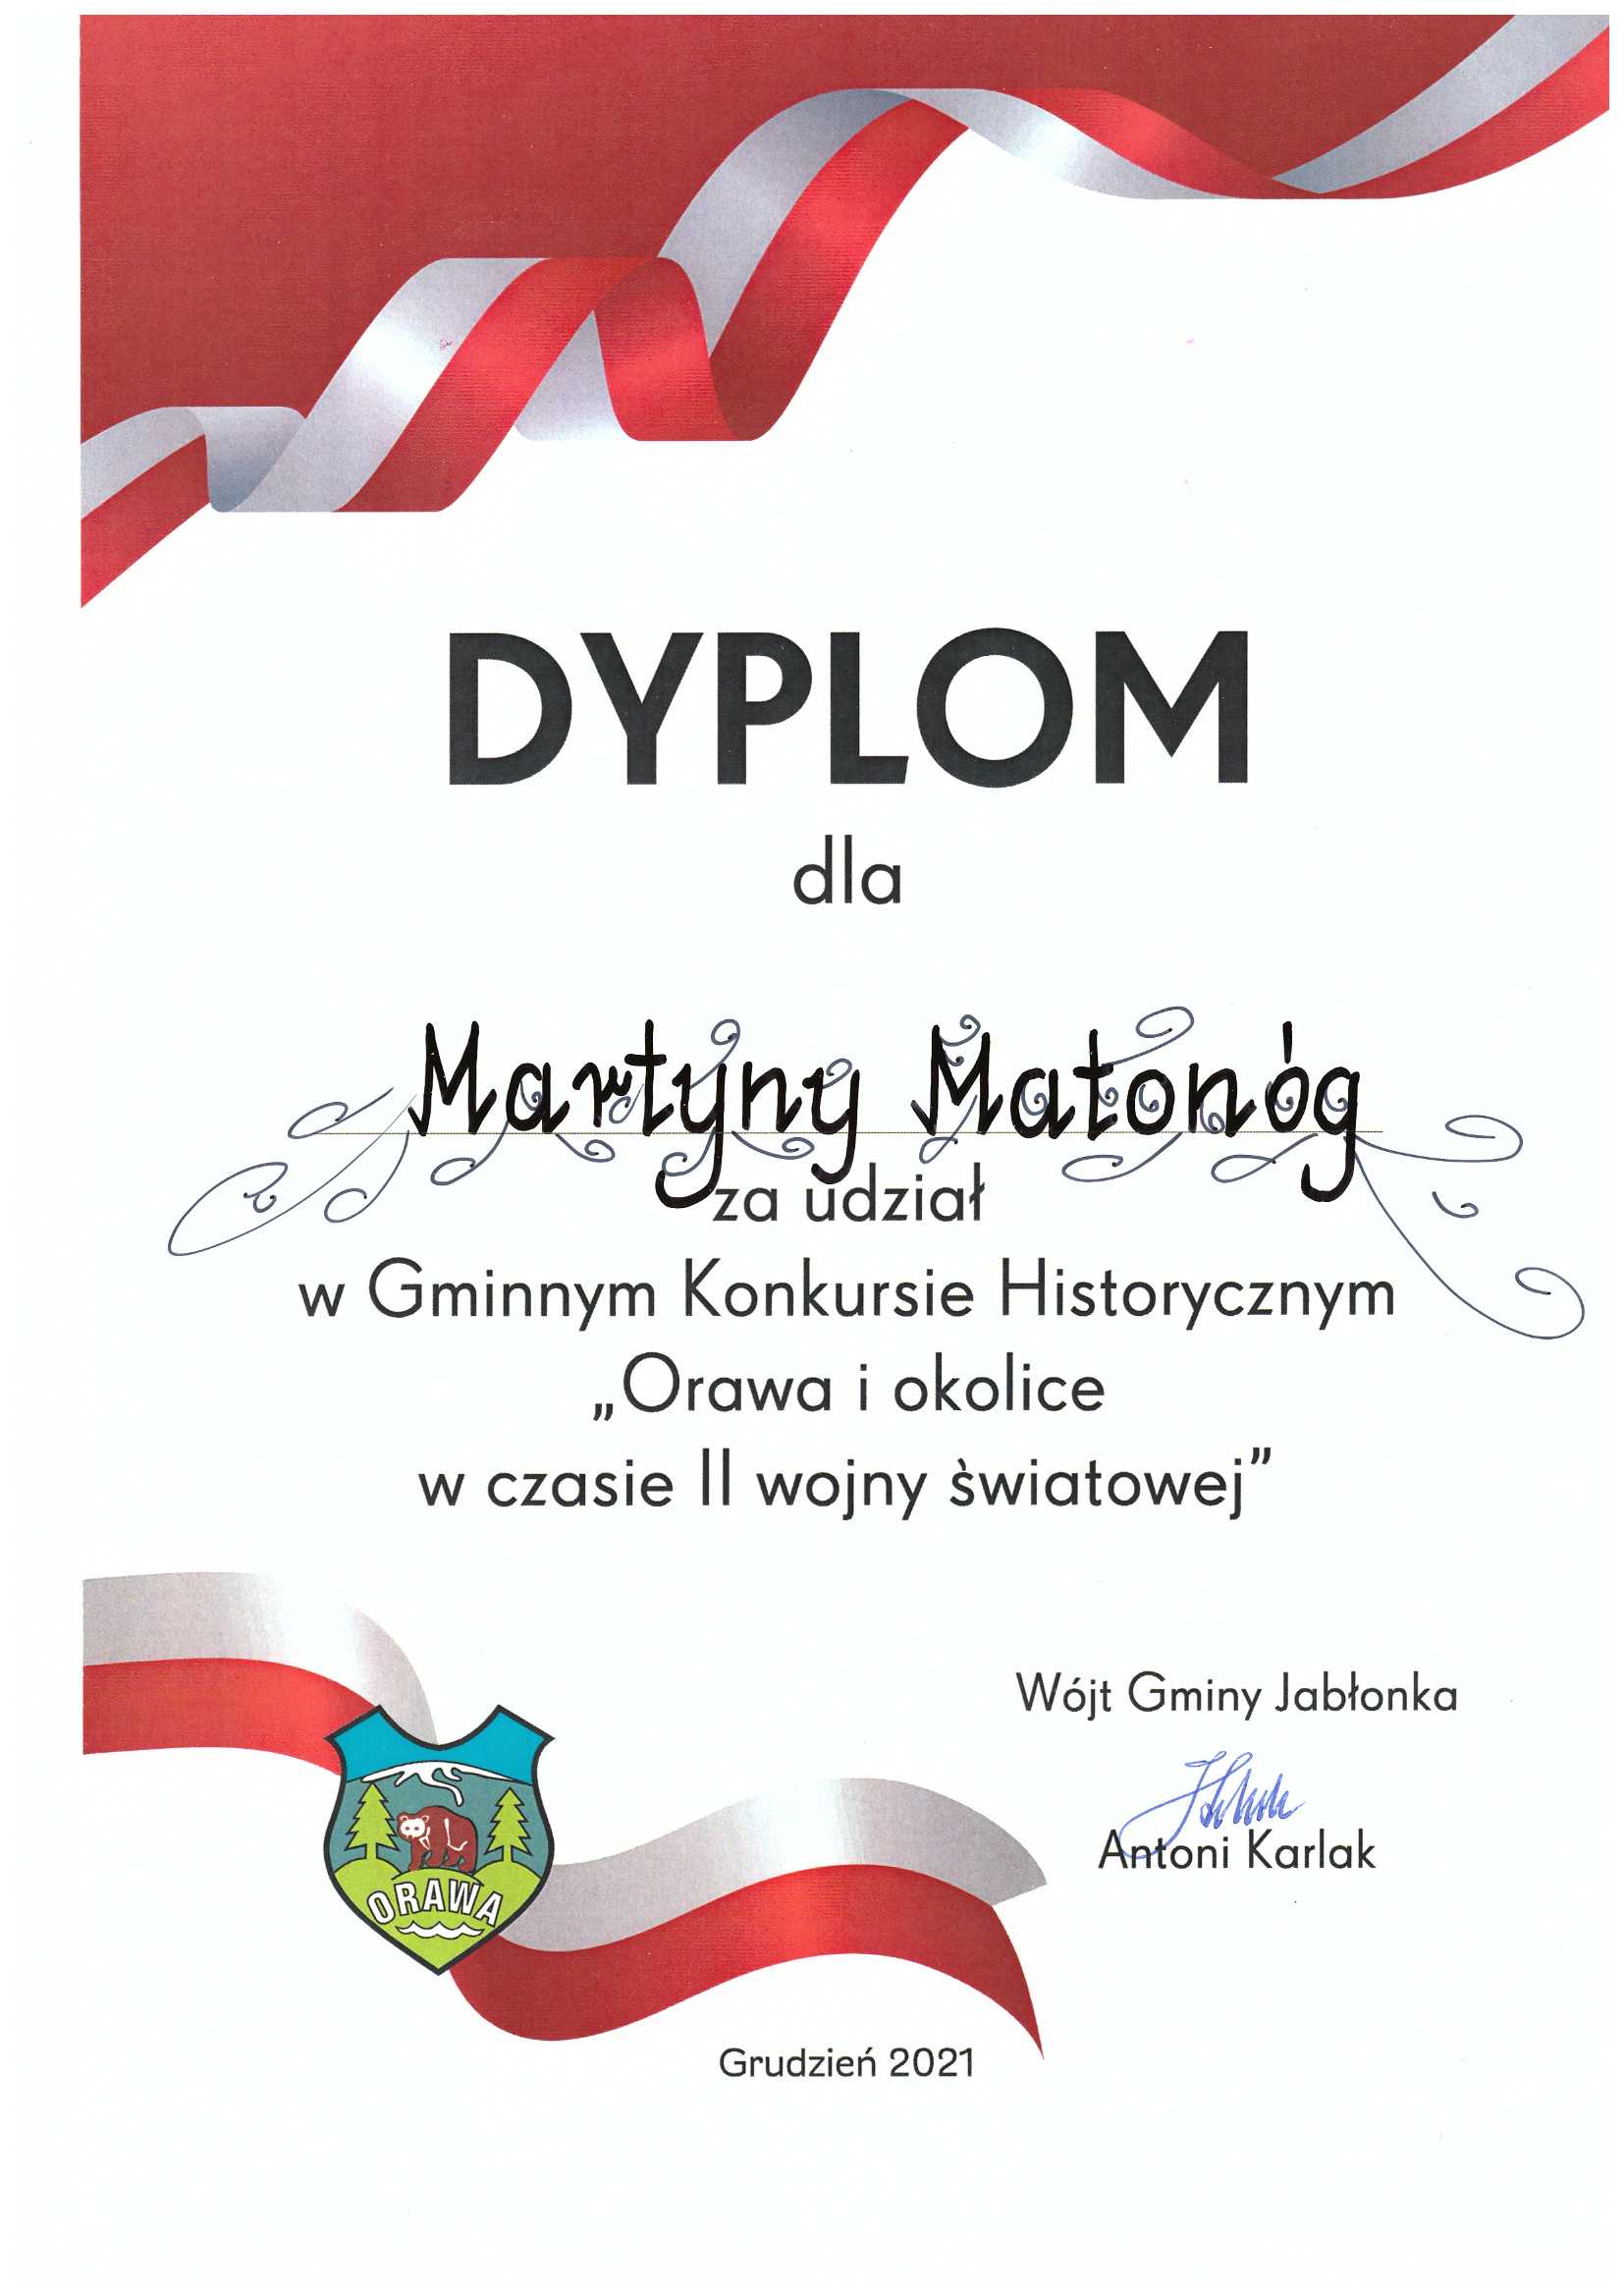 Dyplom dla Martyny Matonog za udział w Gminnym Konkursie Historycznym "Orawa i okolice w czasie II wojny światowej"